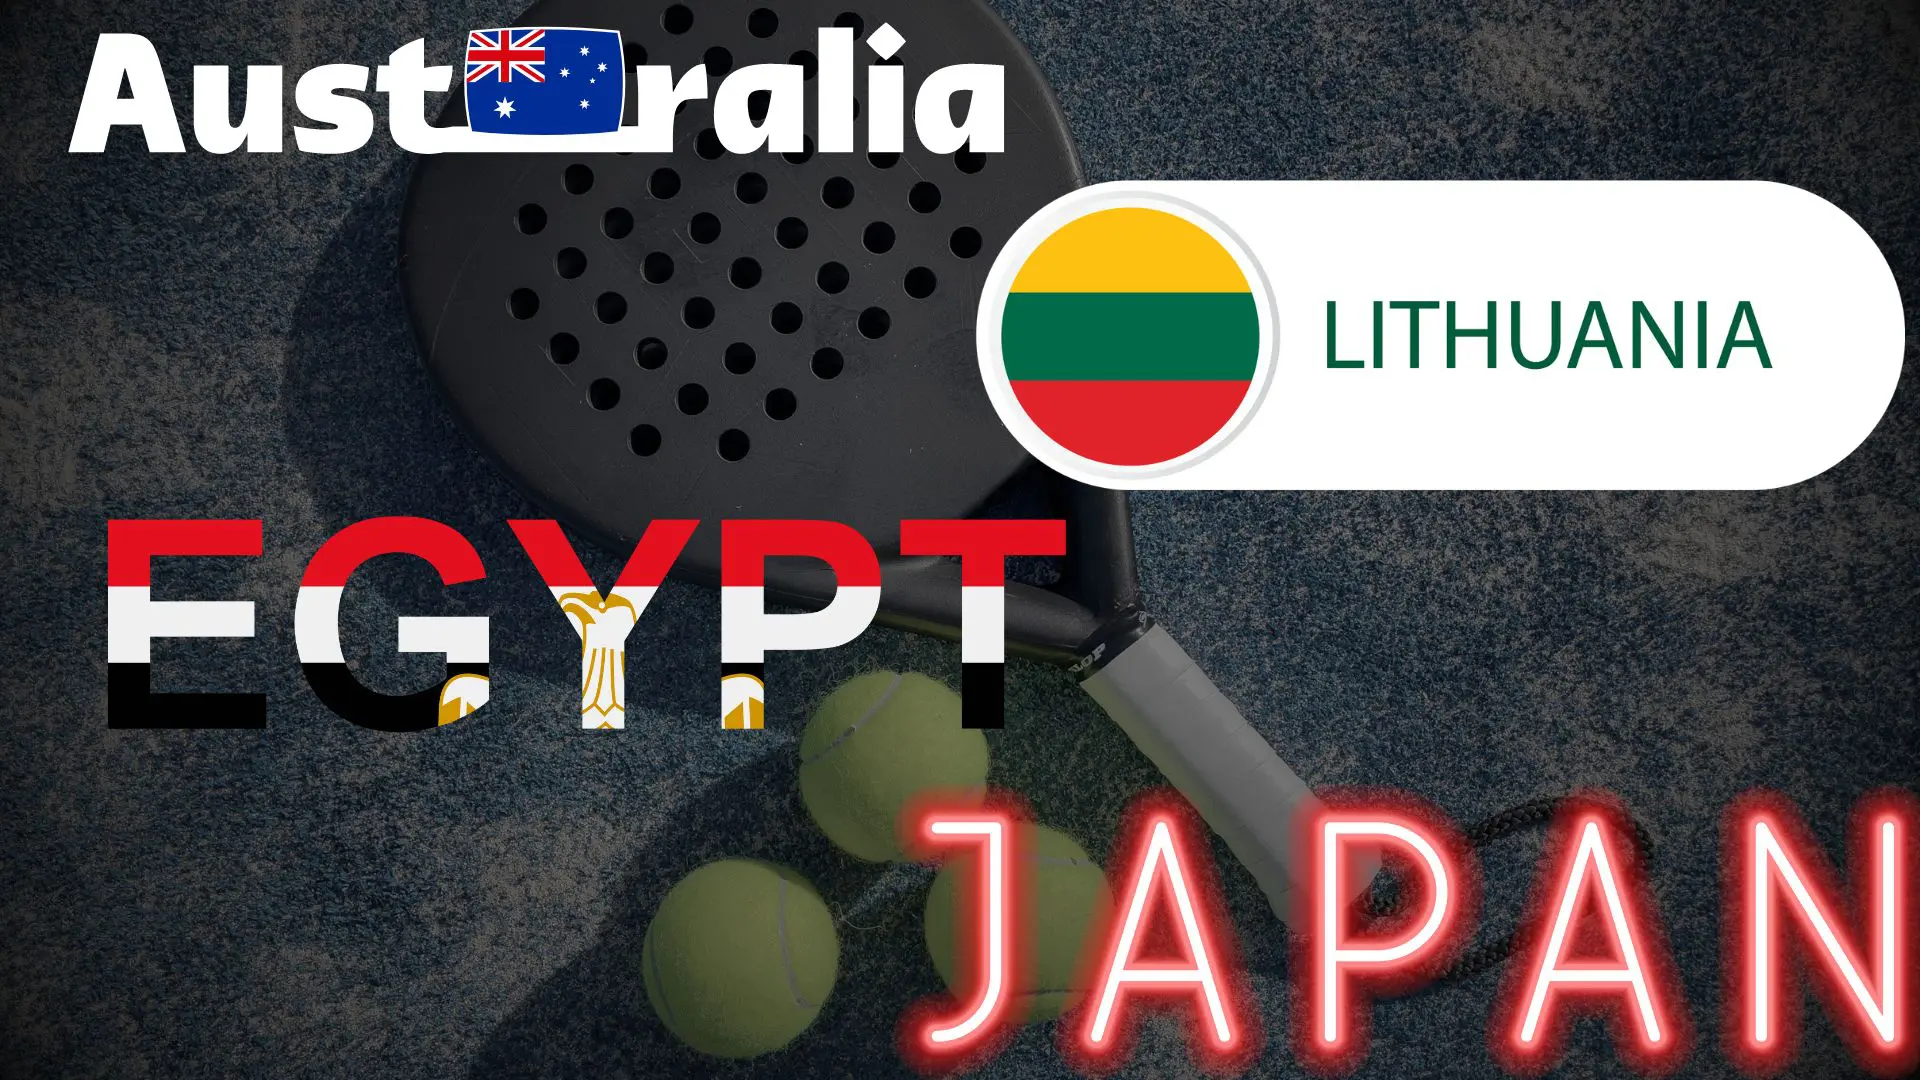 Austràlia Lutània Egipte Japó Fip tour